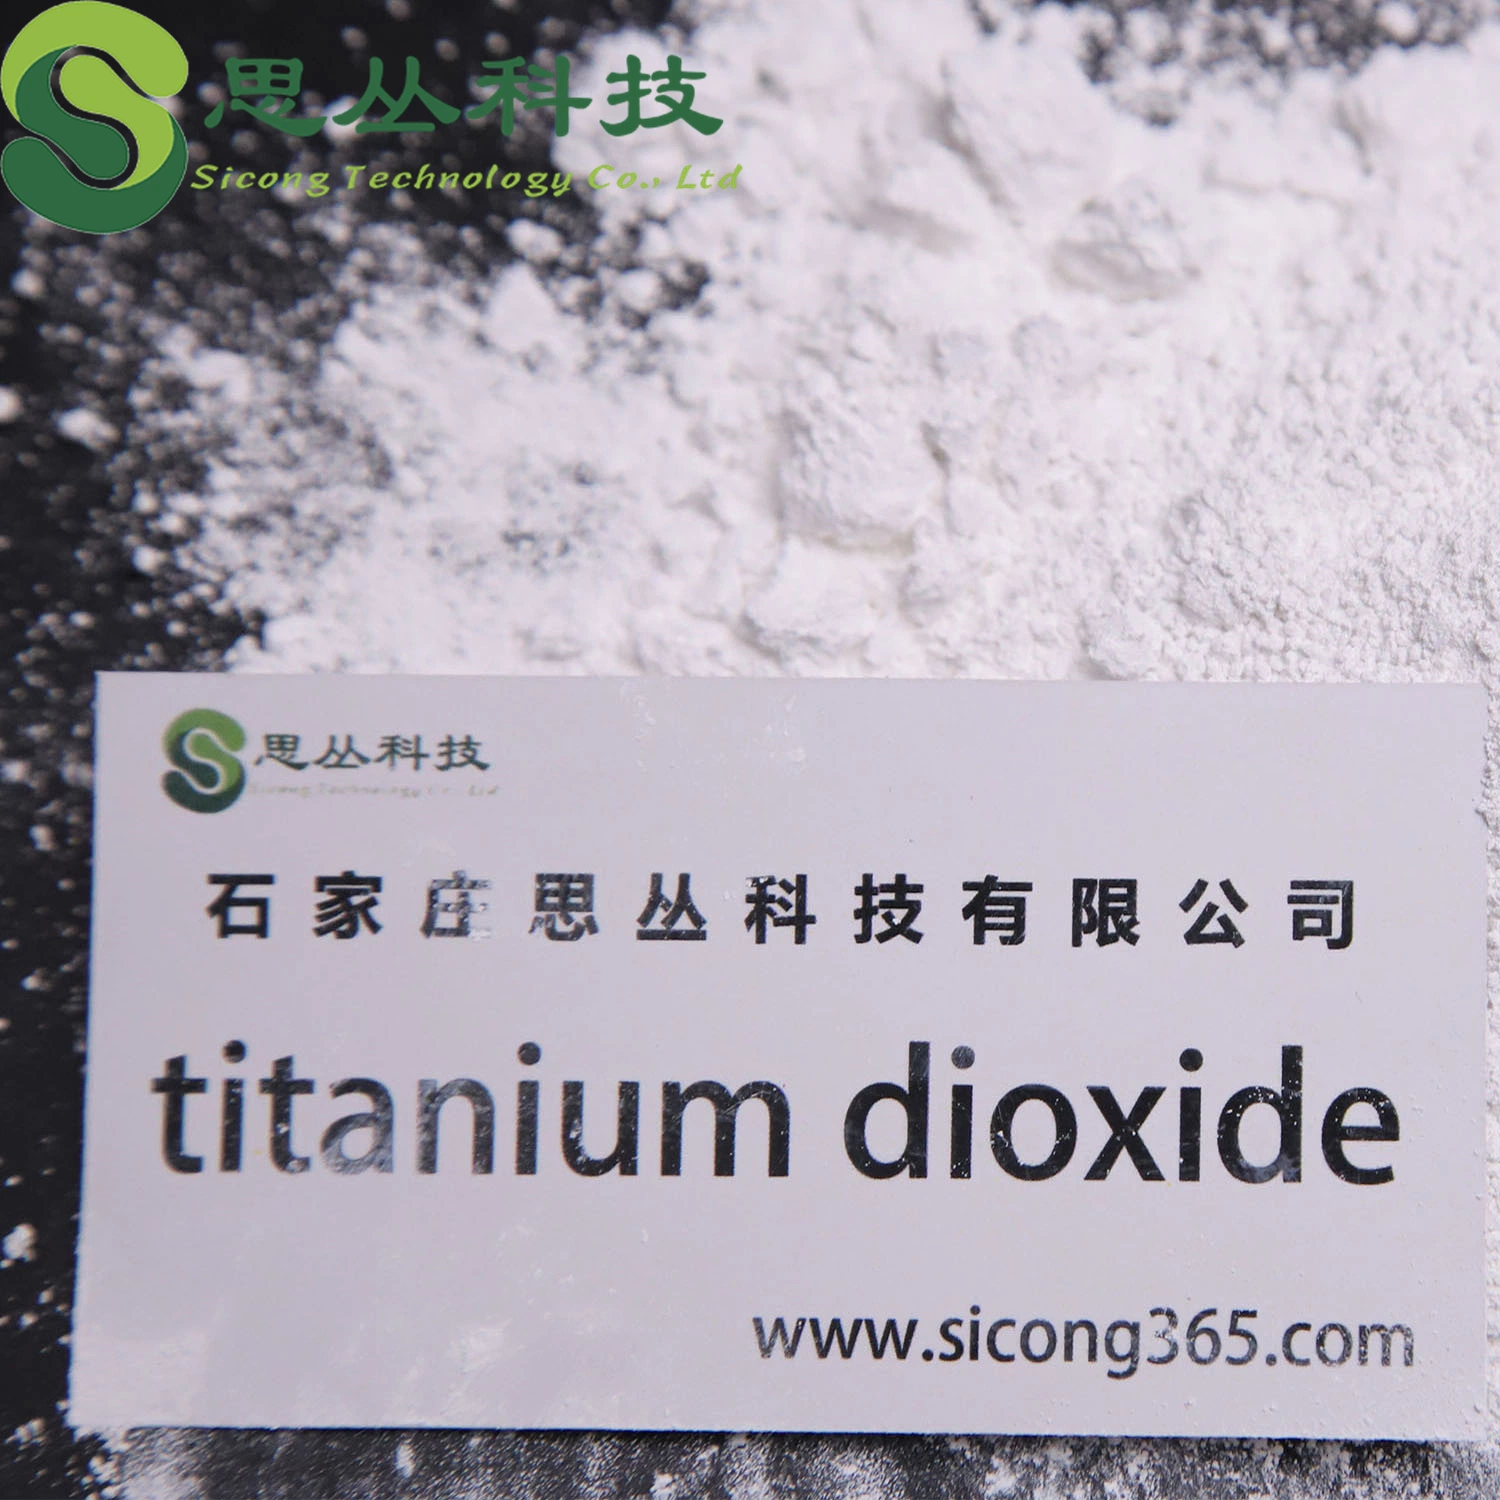 Hot Sale Titanium Dioxide solúvel em água, Titanium Dioxide bem disperso Sunscreen Whitening Agent